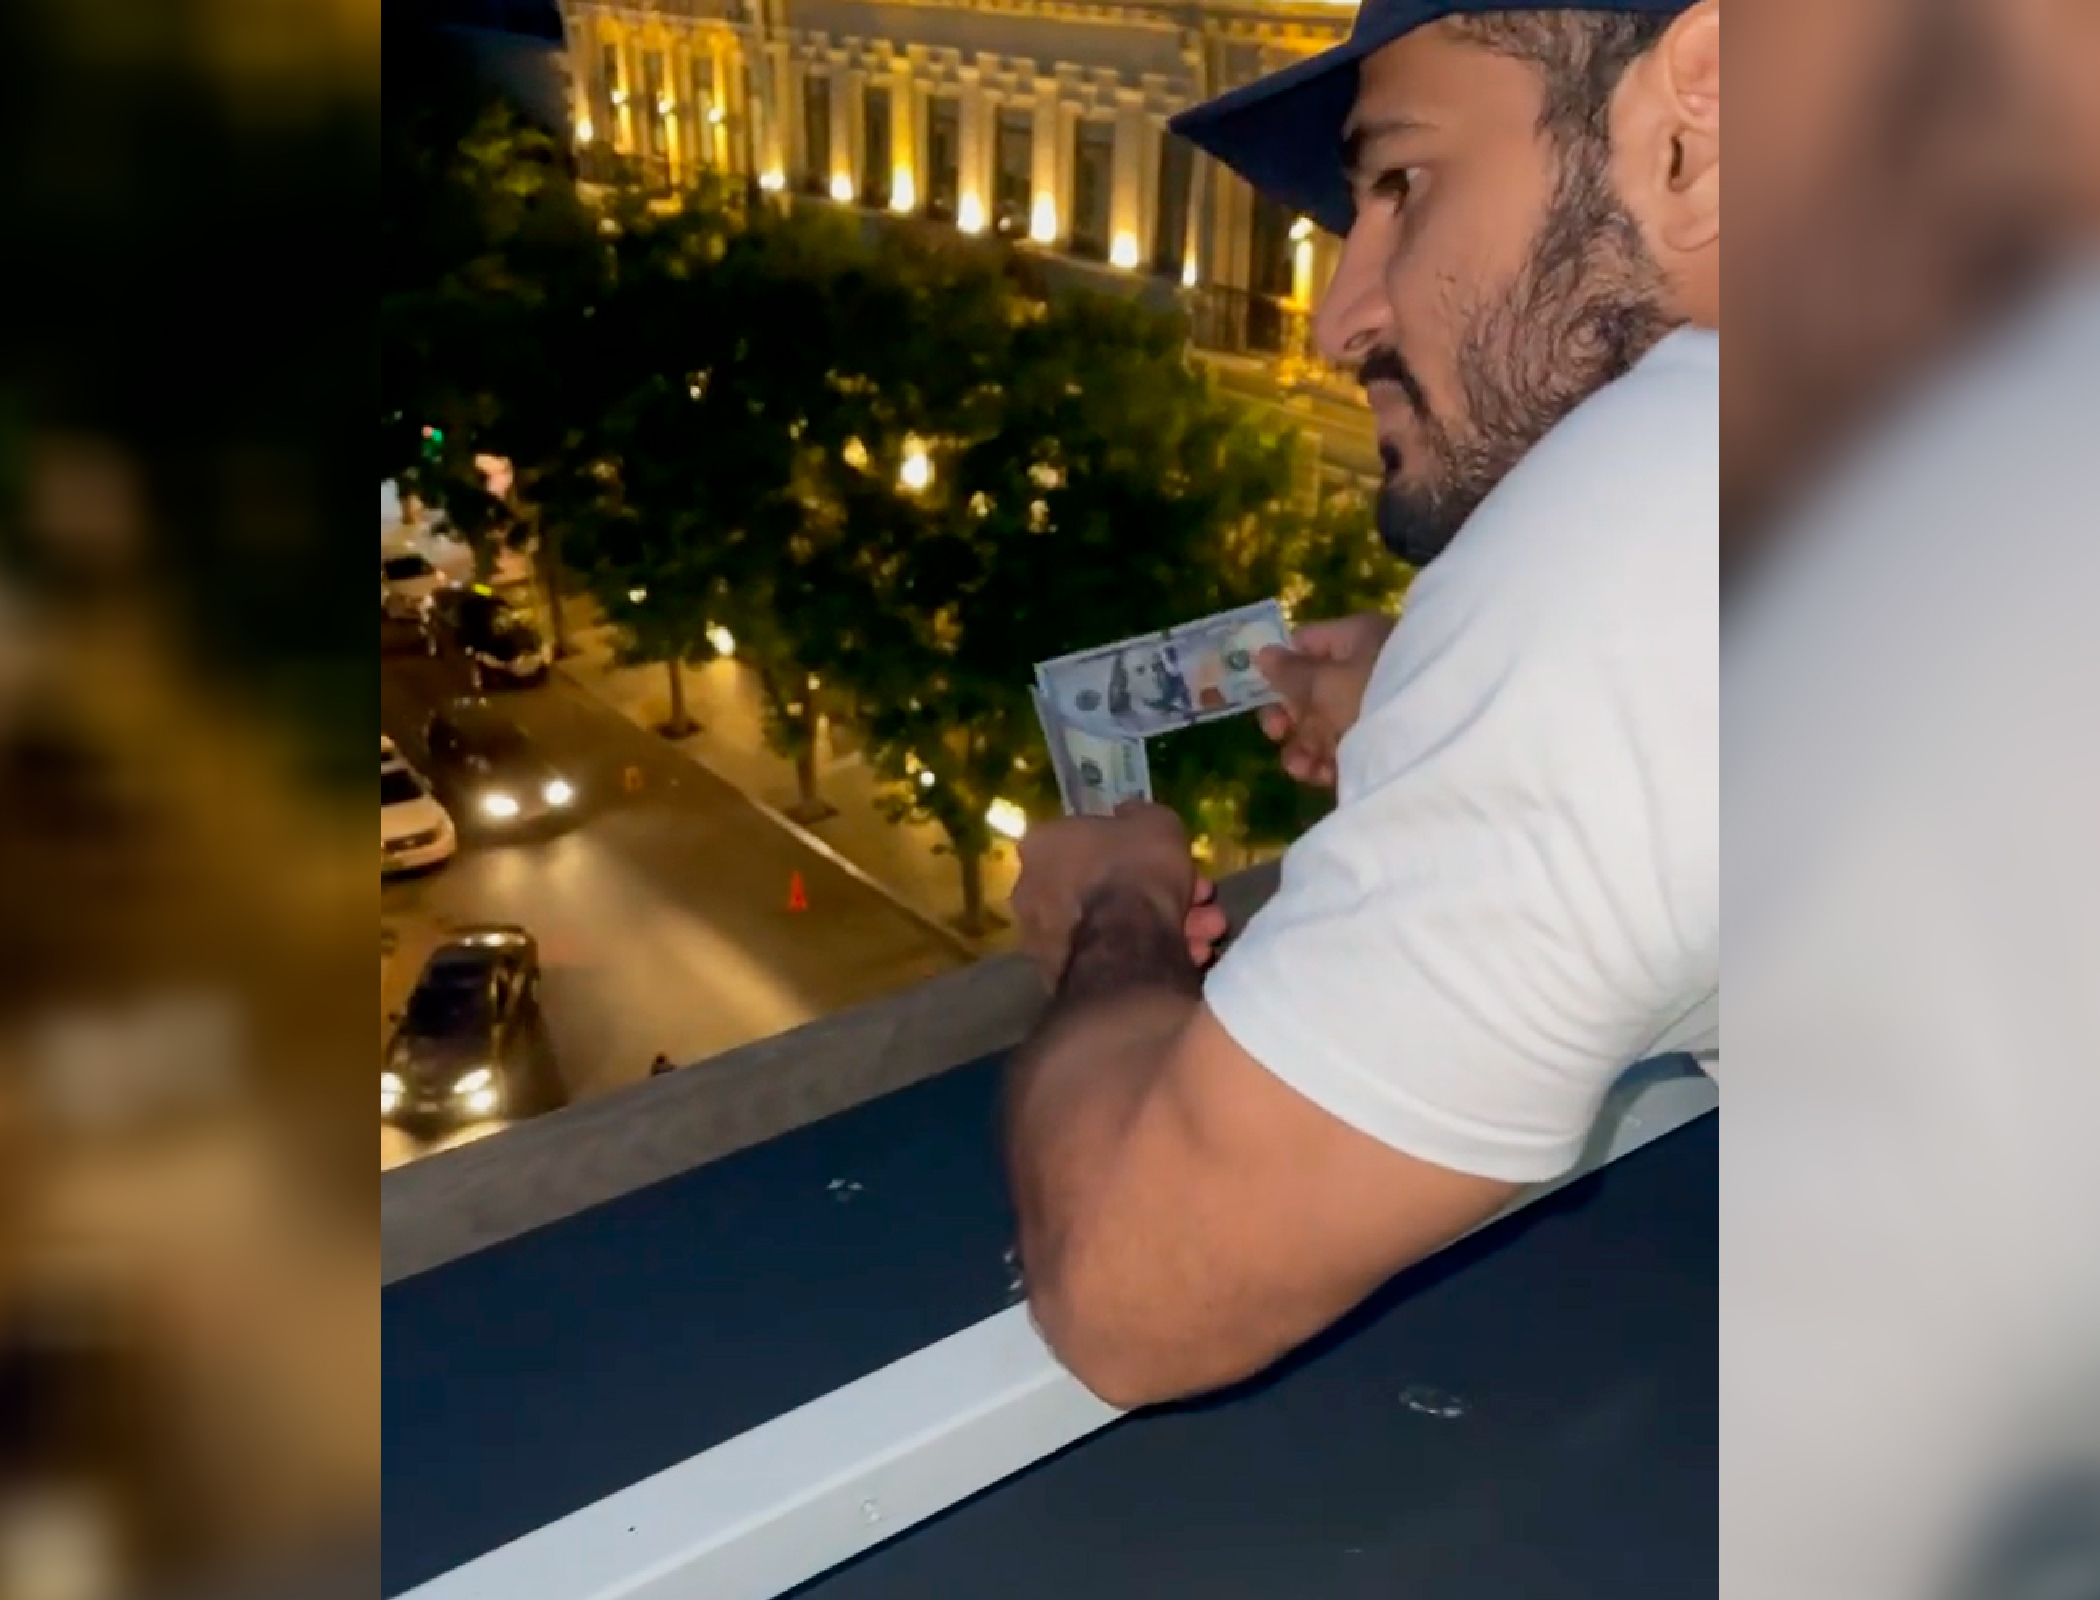 Дзюдоист Эльмар Гасымов разбрасывал доллары с балкона. Его уже исключили из сборной - ВИДЕО